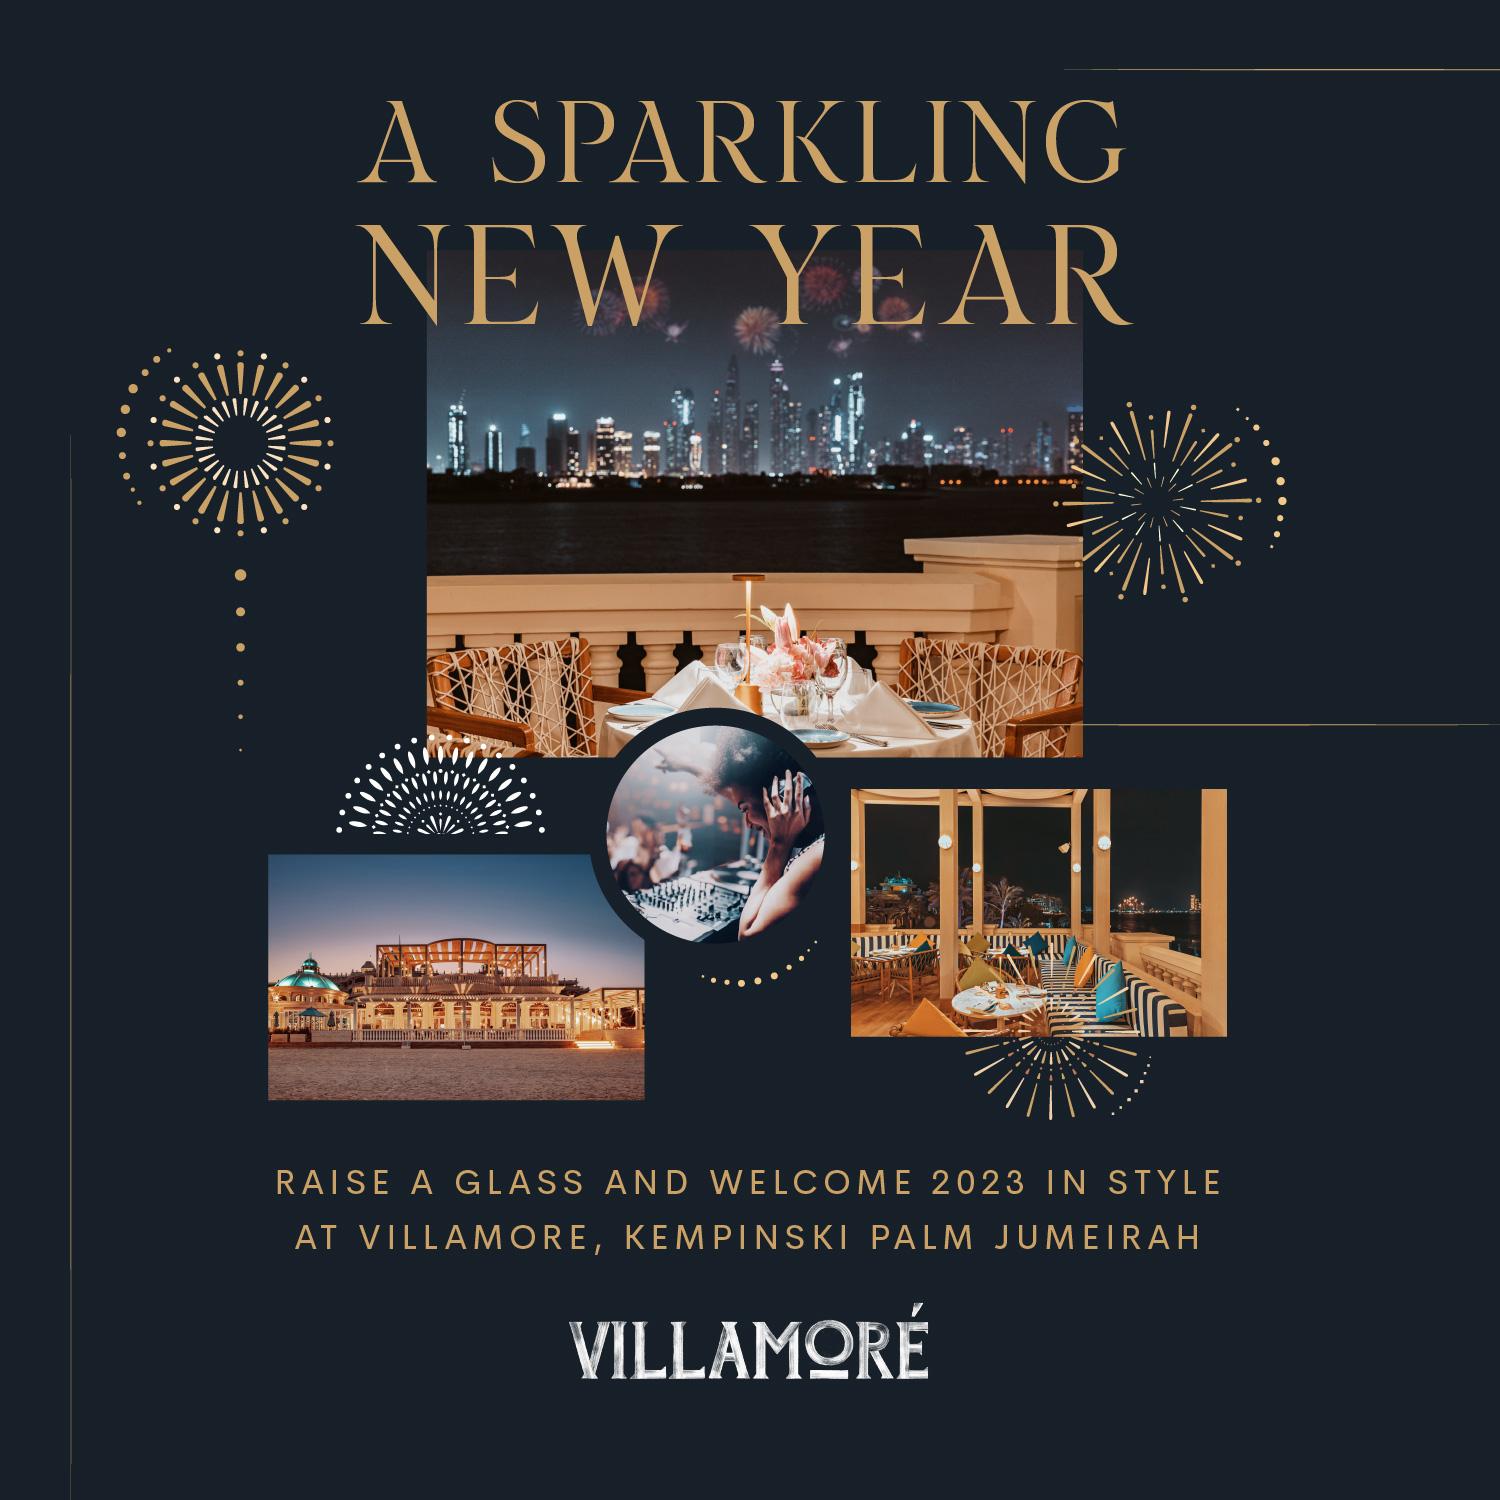 A Sparkling New Year at Villamore